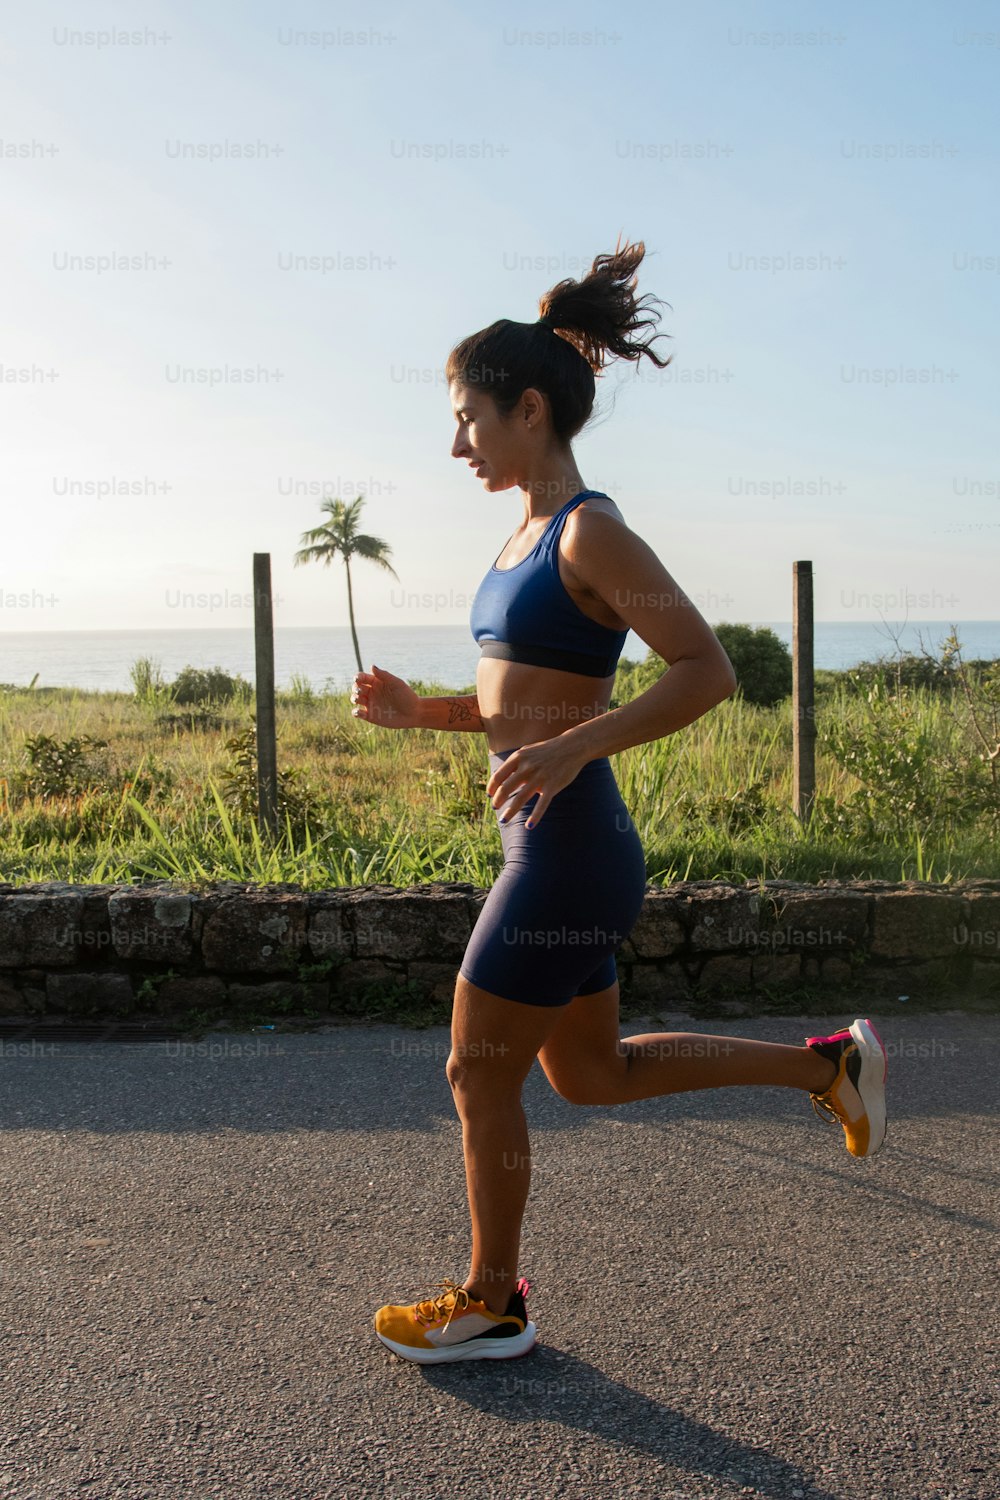 바다 근처 도로를 달리는 여자